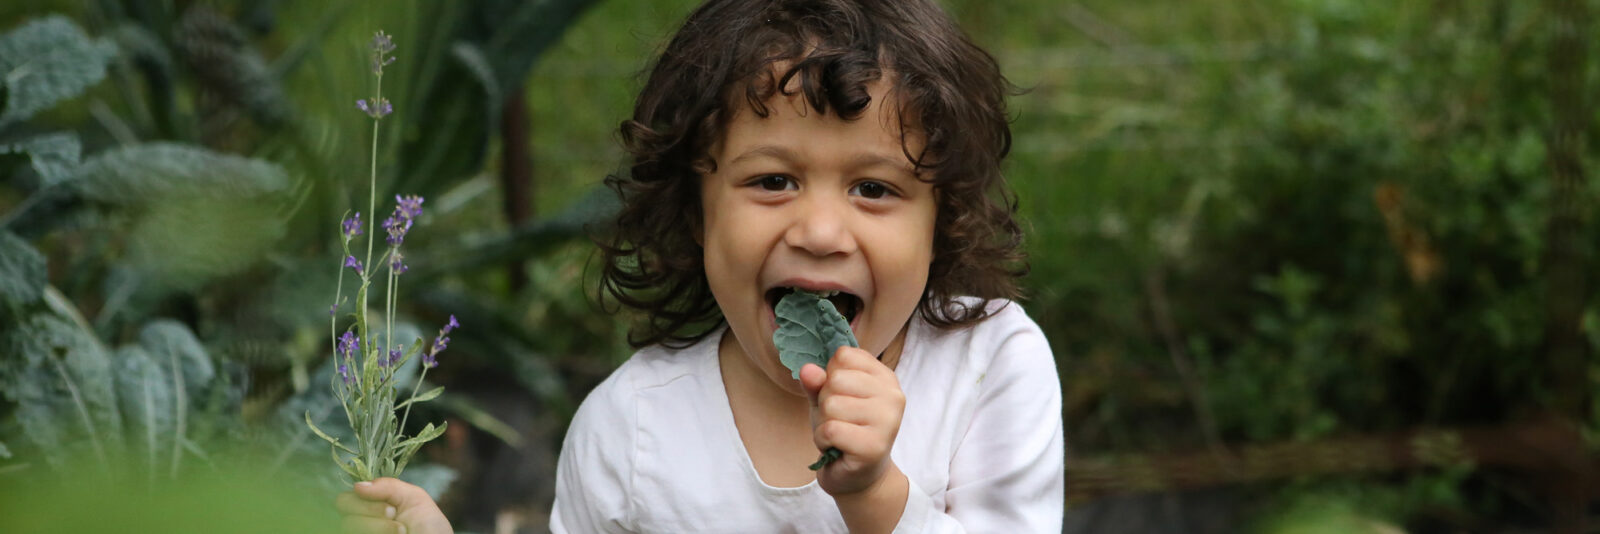 Young girl joyfully eating kale.